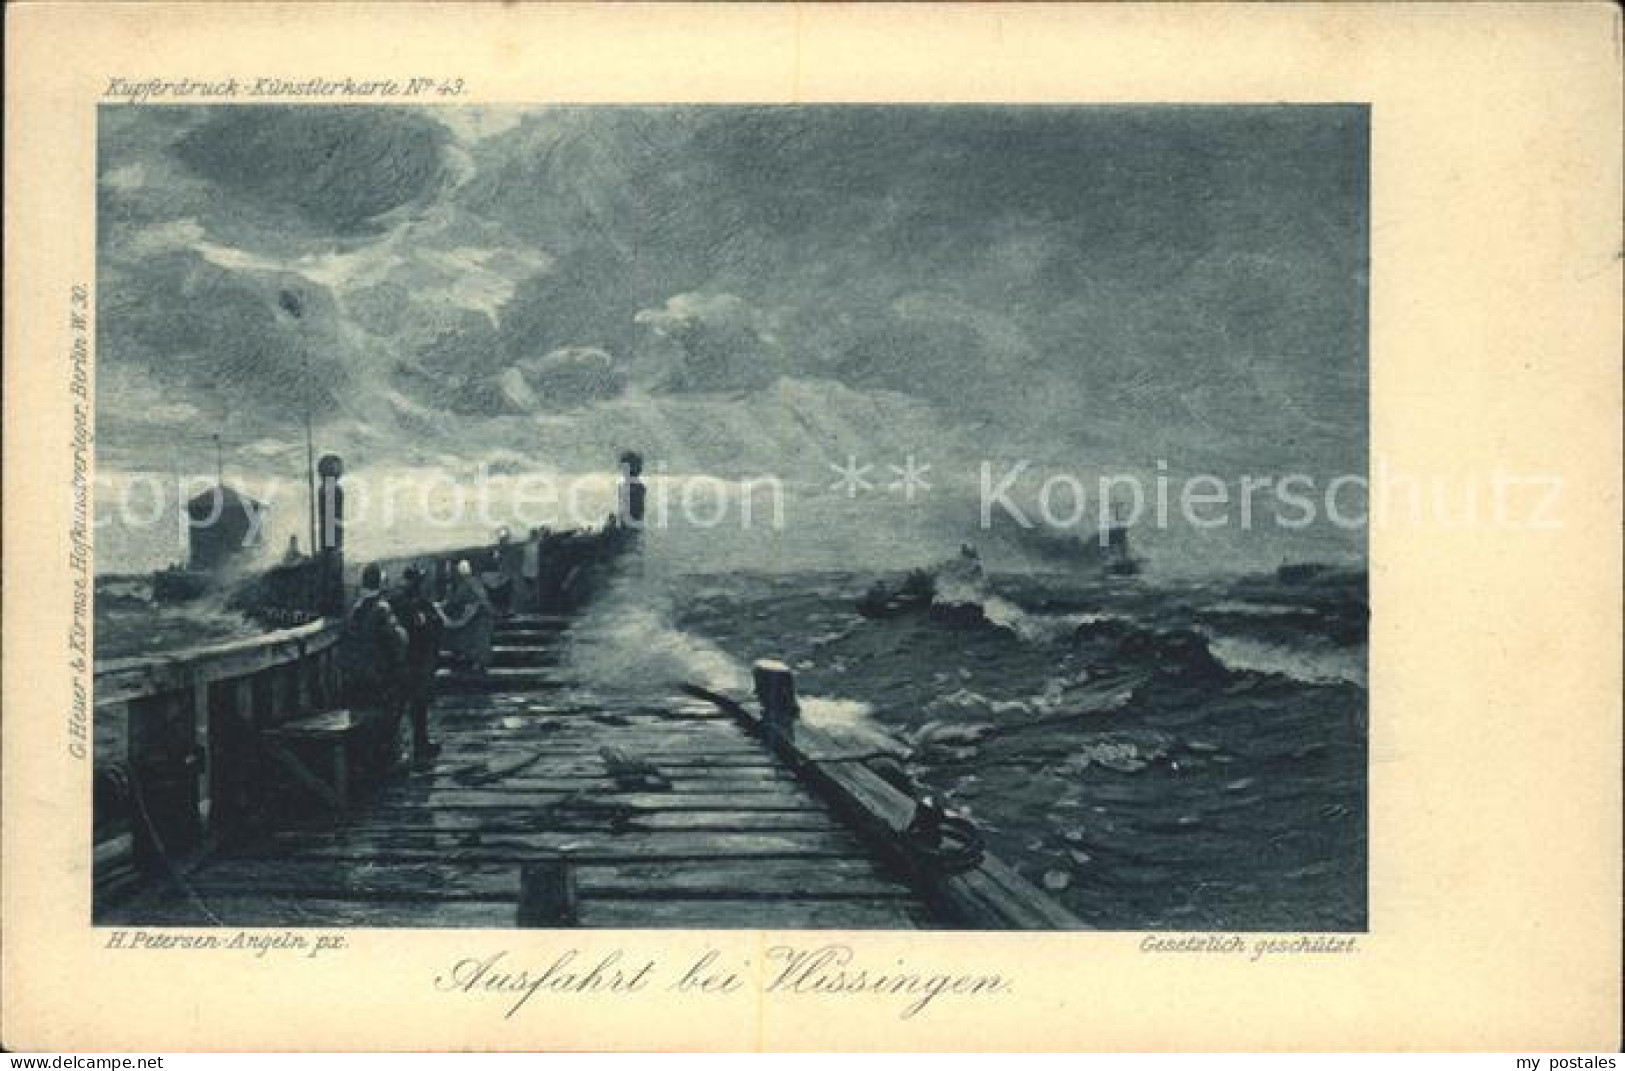 41562546 Wissingen Kupferdruck-Kuenstlerkarte Nr. 43 H. Petersen-Angeln Bissendo - Bissendorf